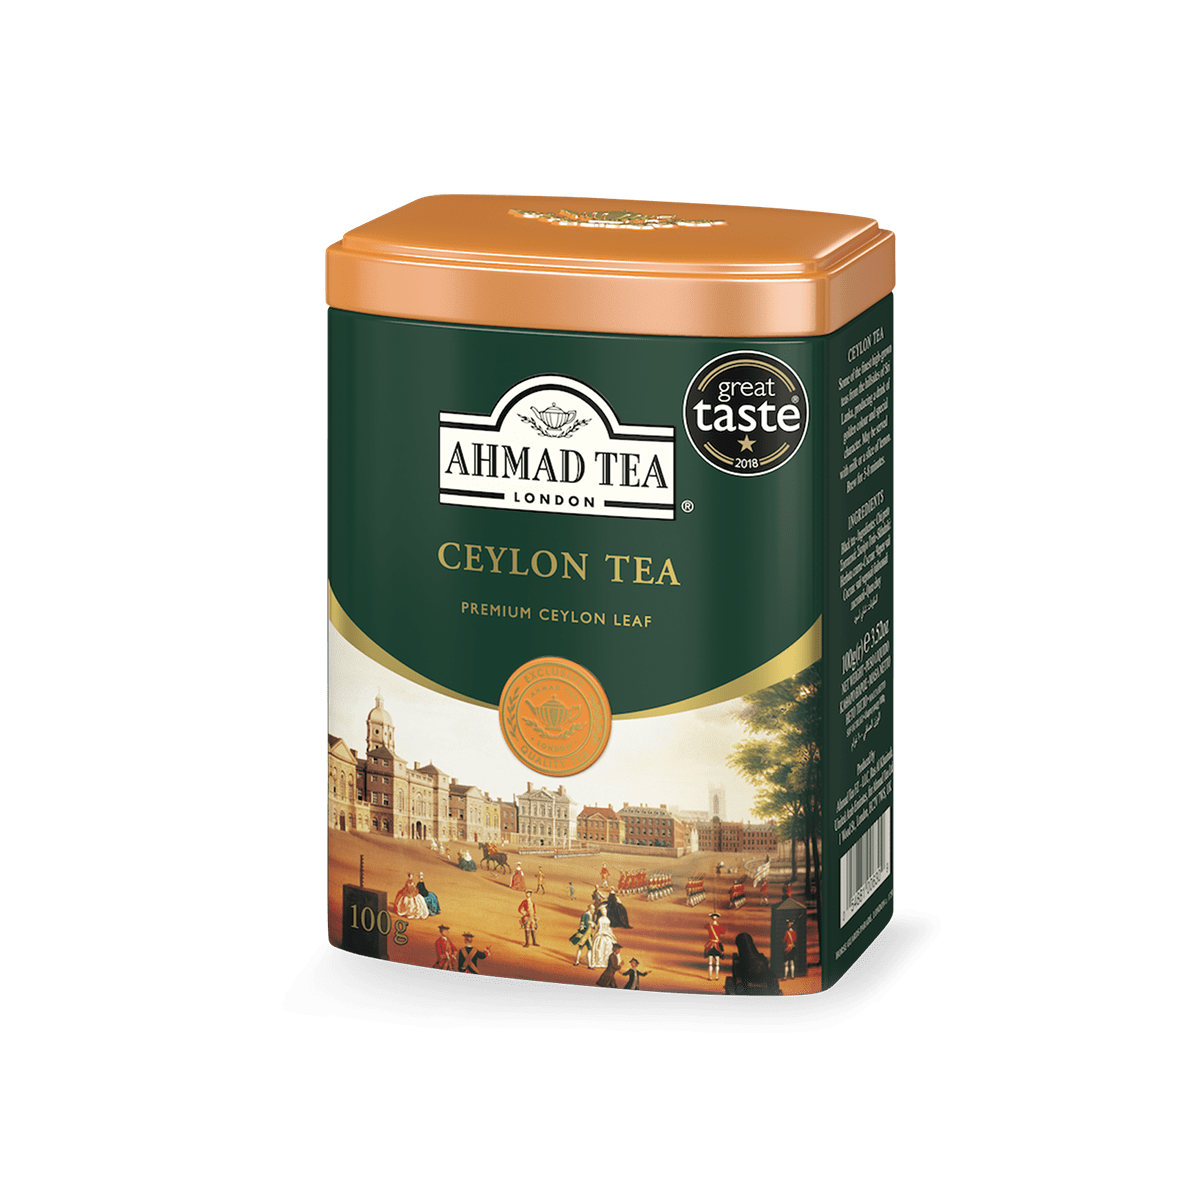 Ahmad Tea 500g Paradise Blend Ceylon Loose Leaf Tea with Orange Blossom  Aroma